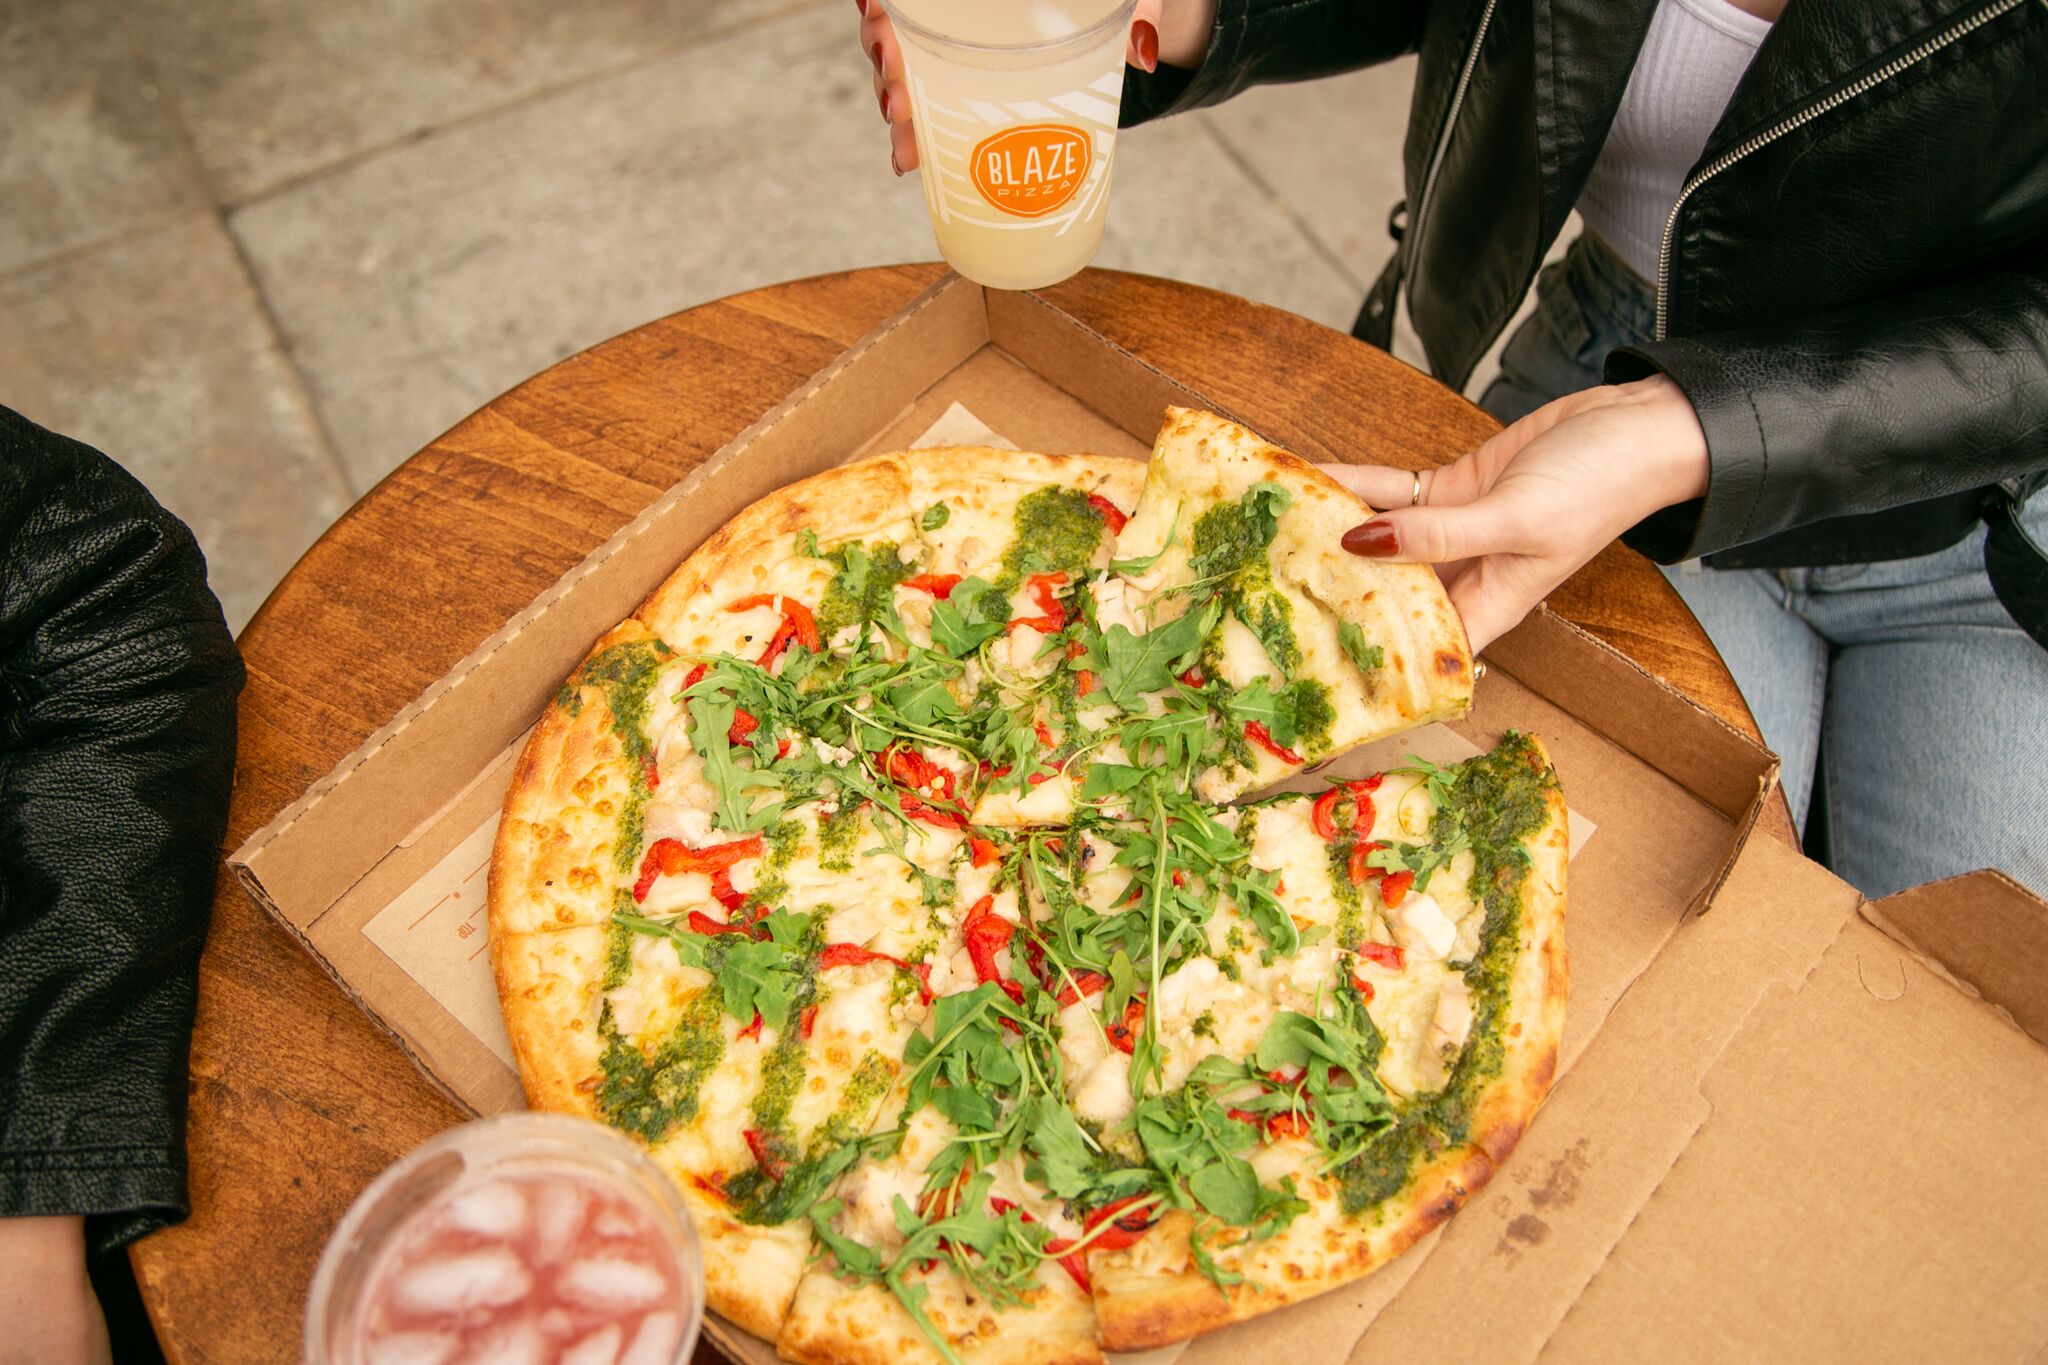 Del Taco Blaze Pizza Offer Free Delivery Amid Coronavirus